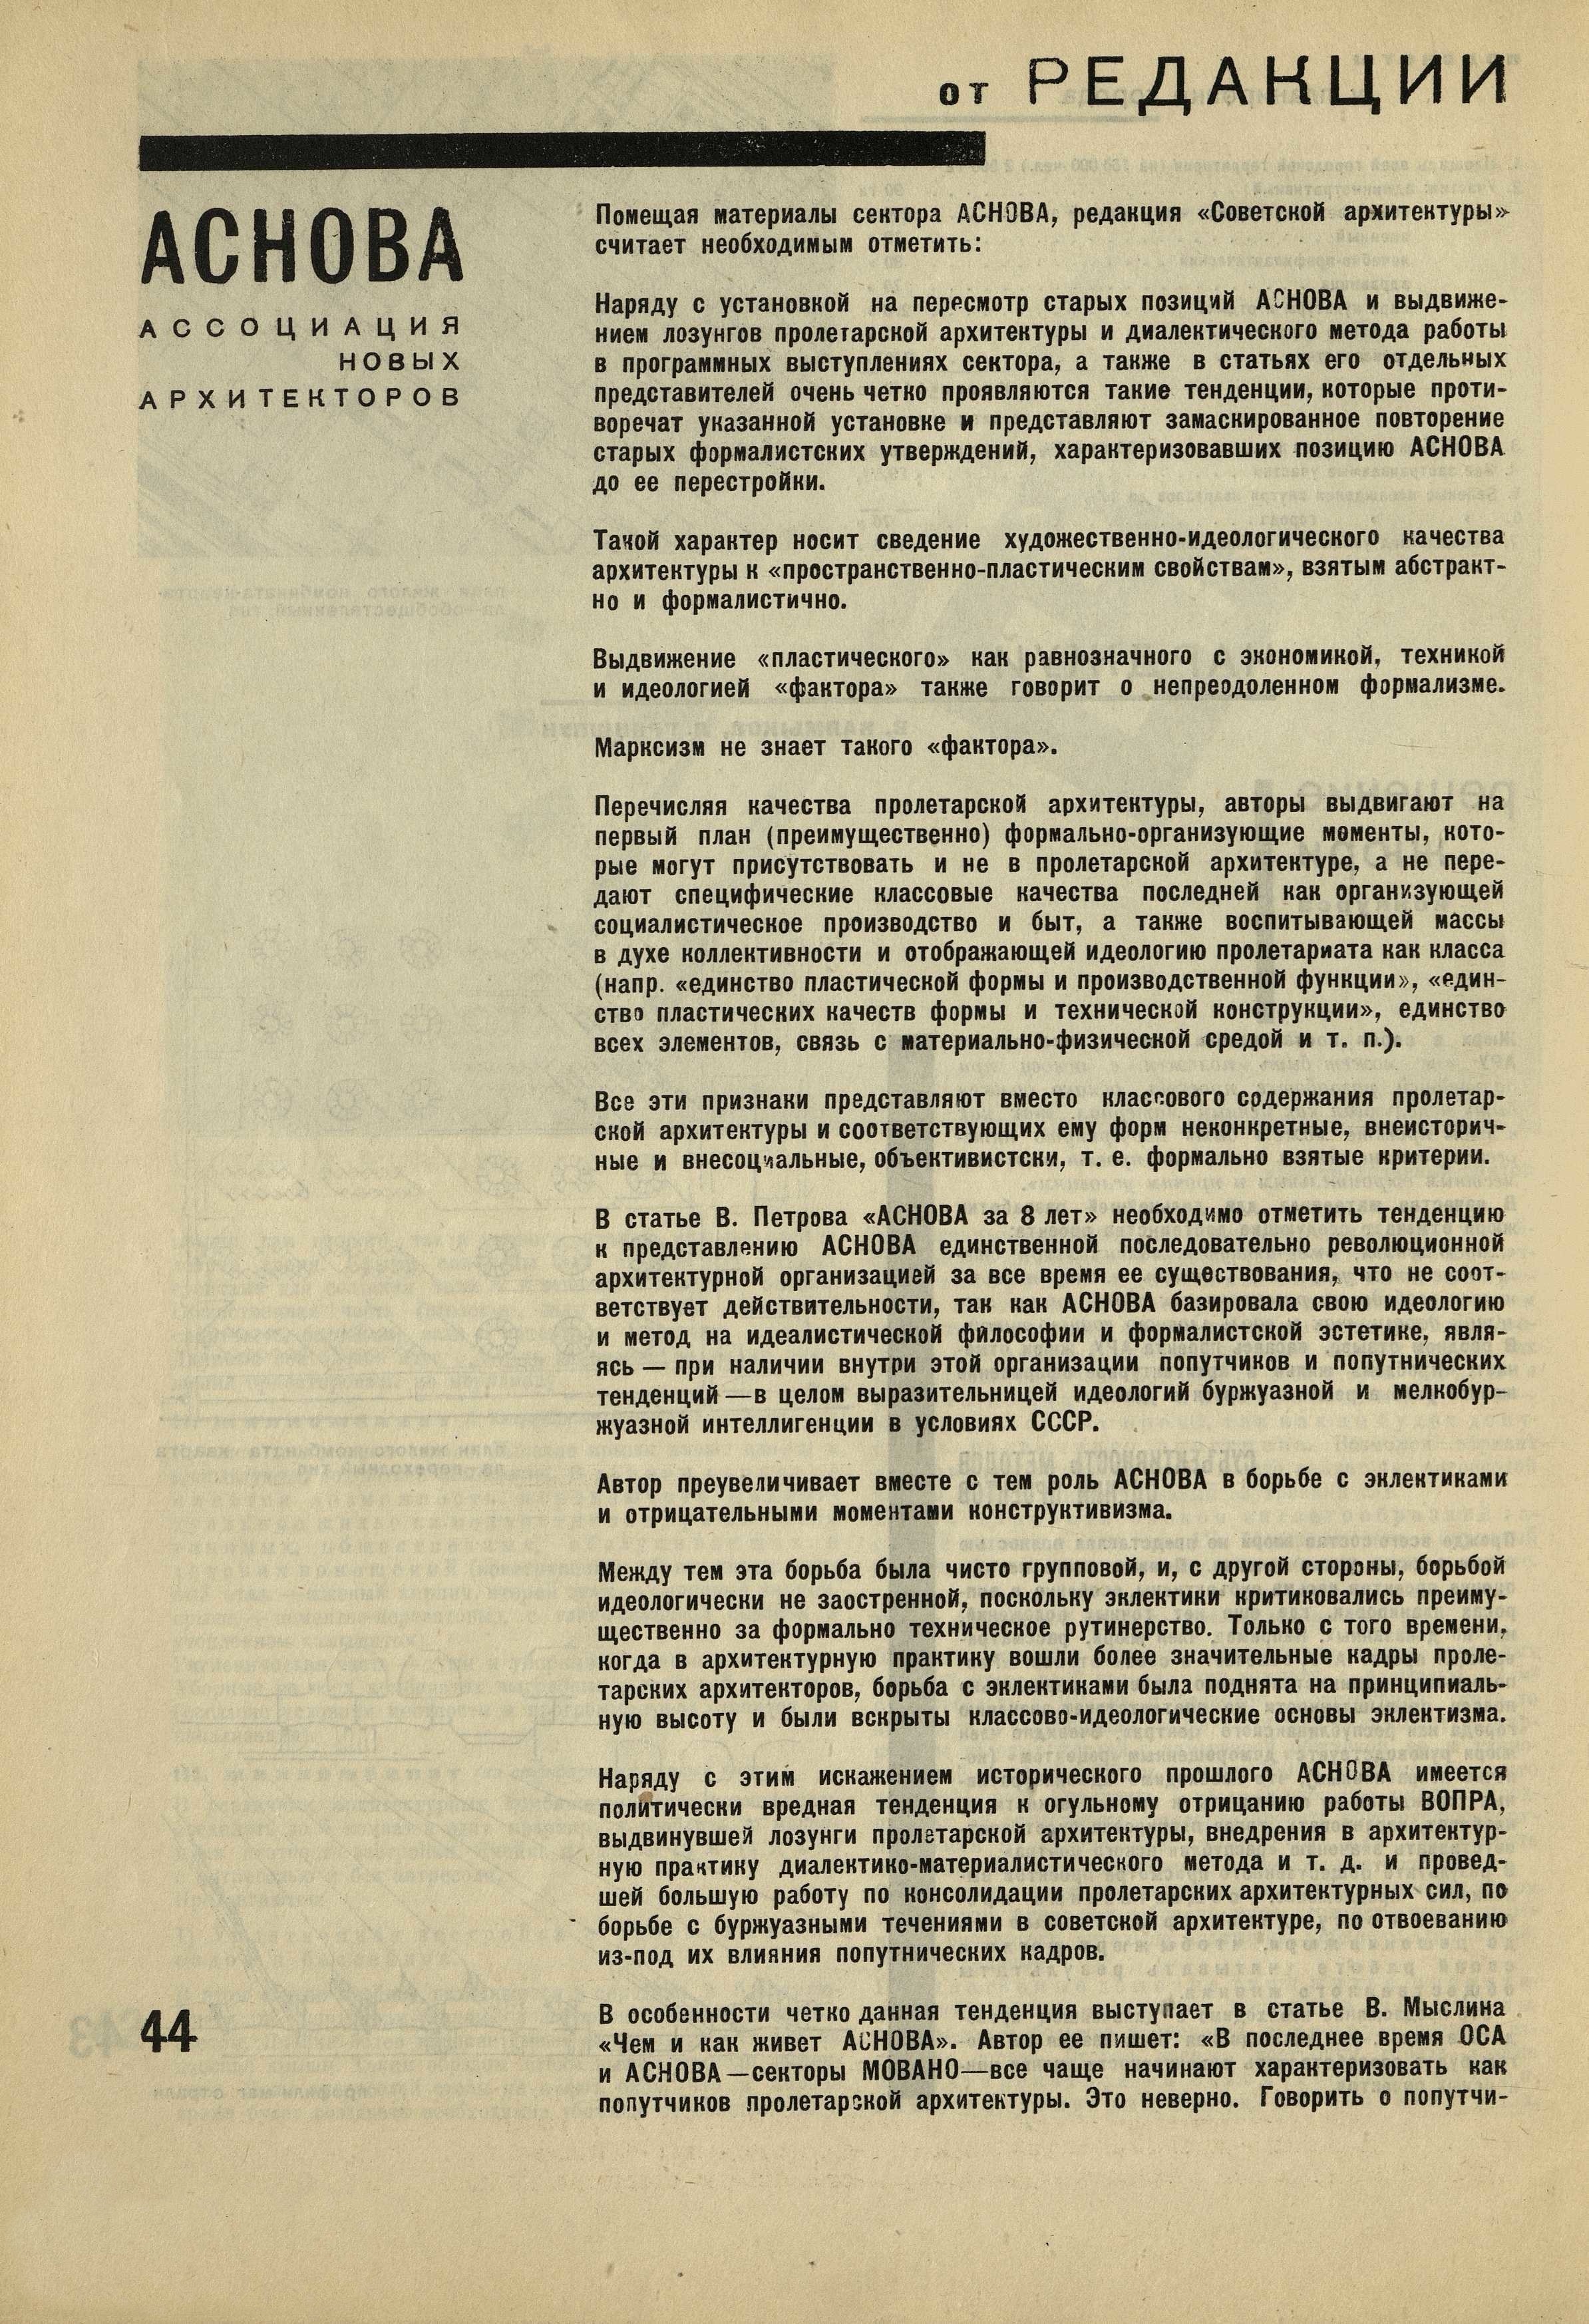 Программно-идеологическая установка сектора АСНОВА // Советская архитектура. — 1931. — № 1—2